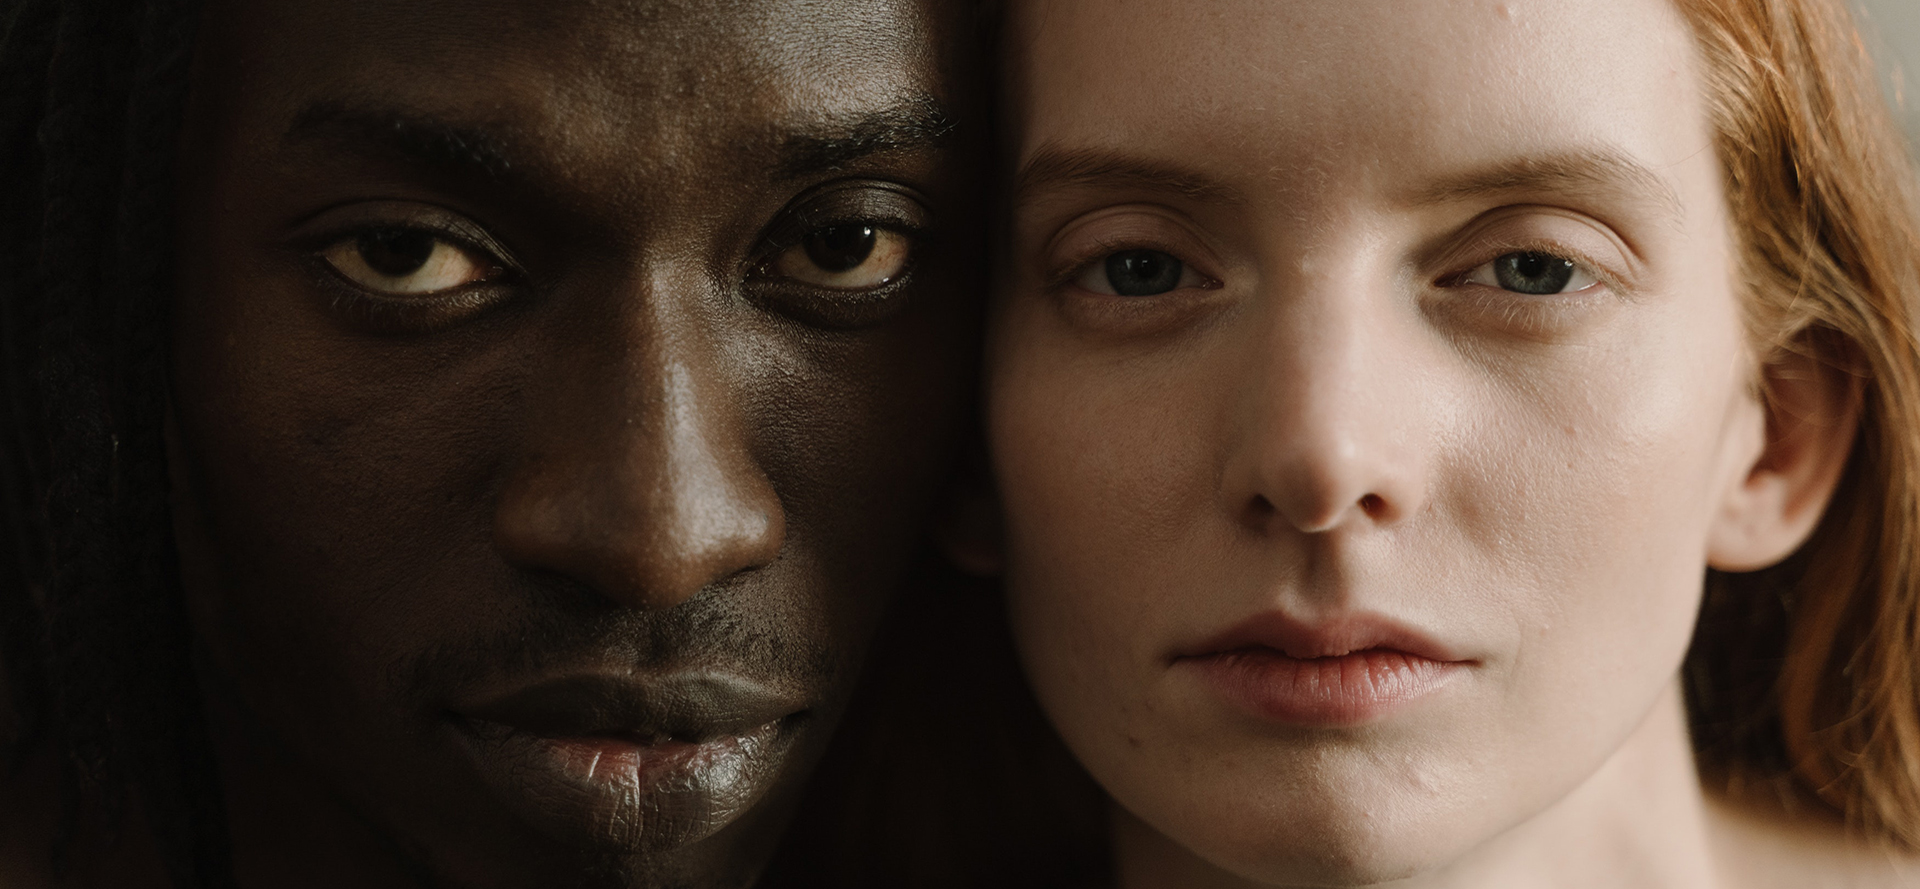 Un portrait en face à face d'un homme noir et d'une femme blanche.